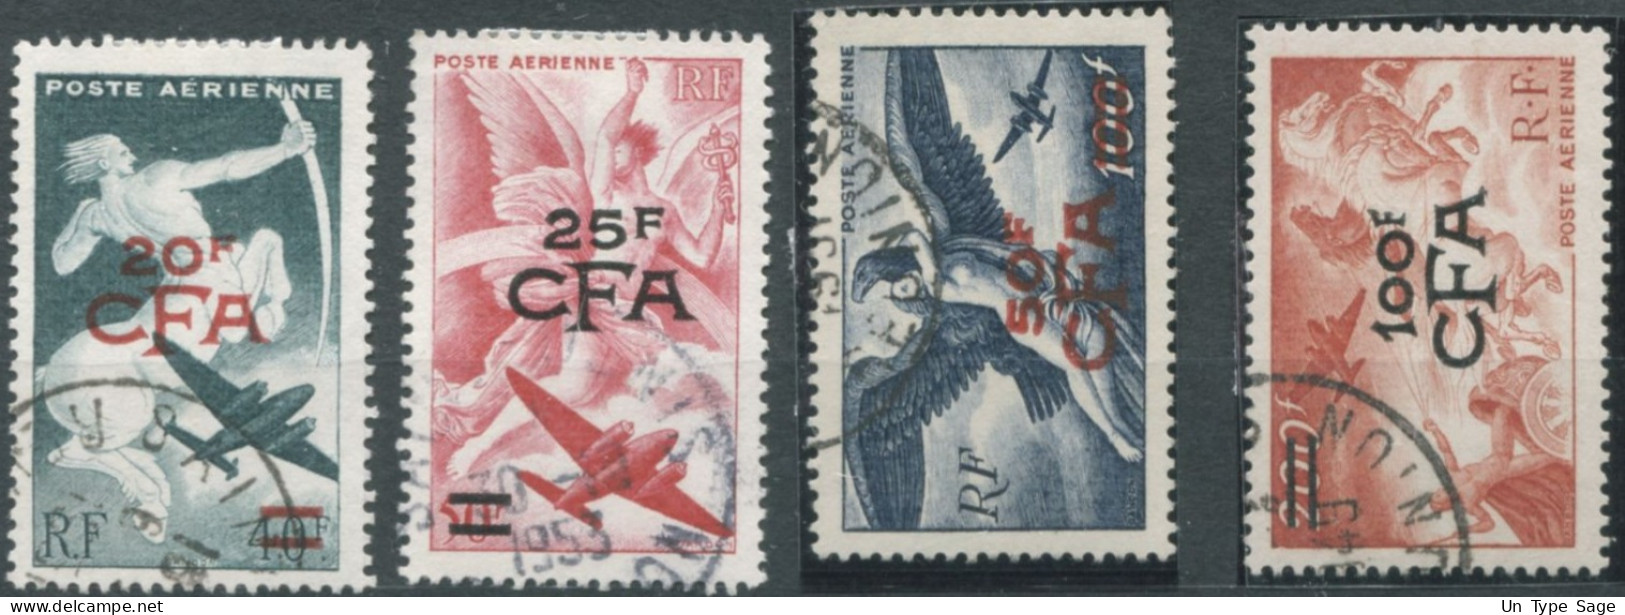 Réunion Poste Aérienne N°45 à 48 - Oblitérés - (F1590) - Airmail